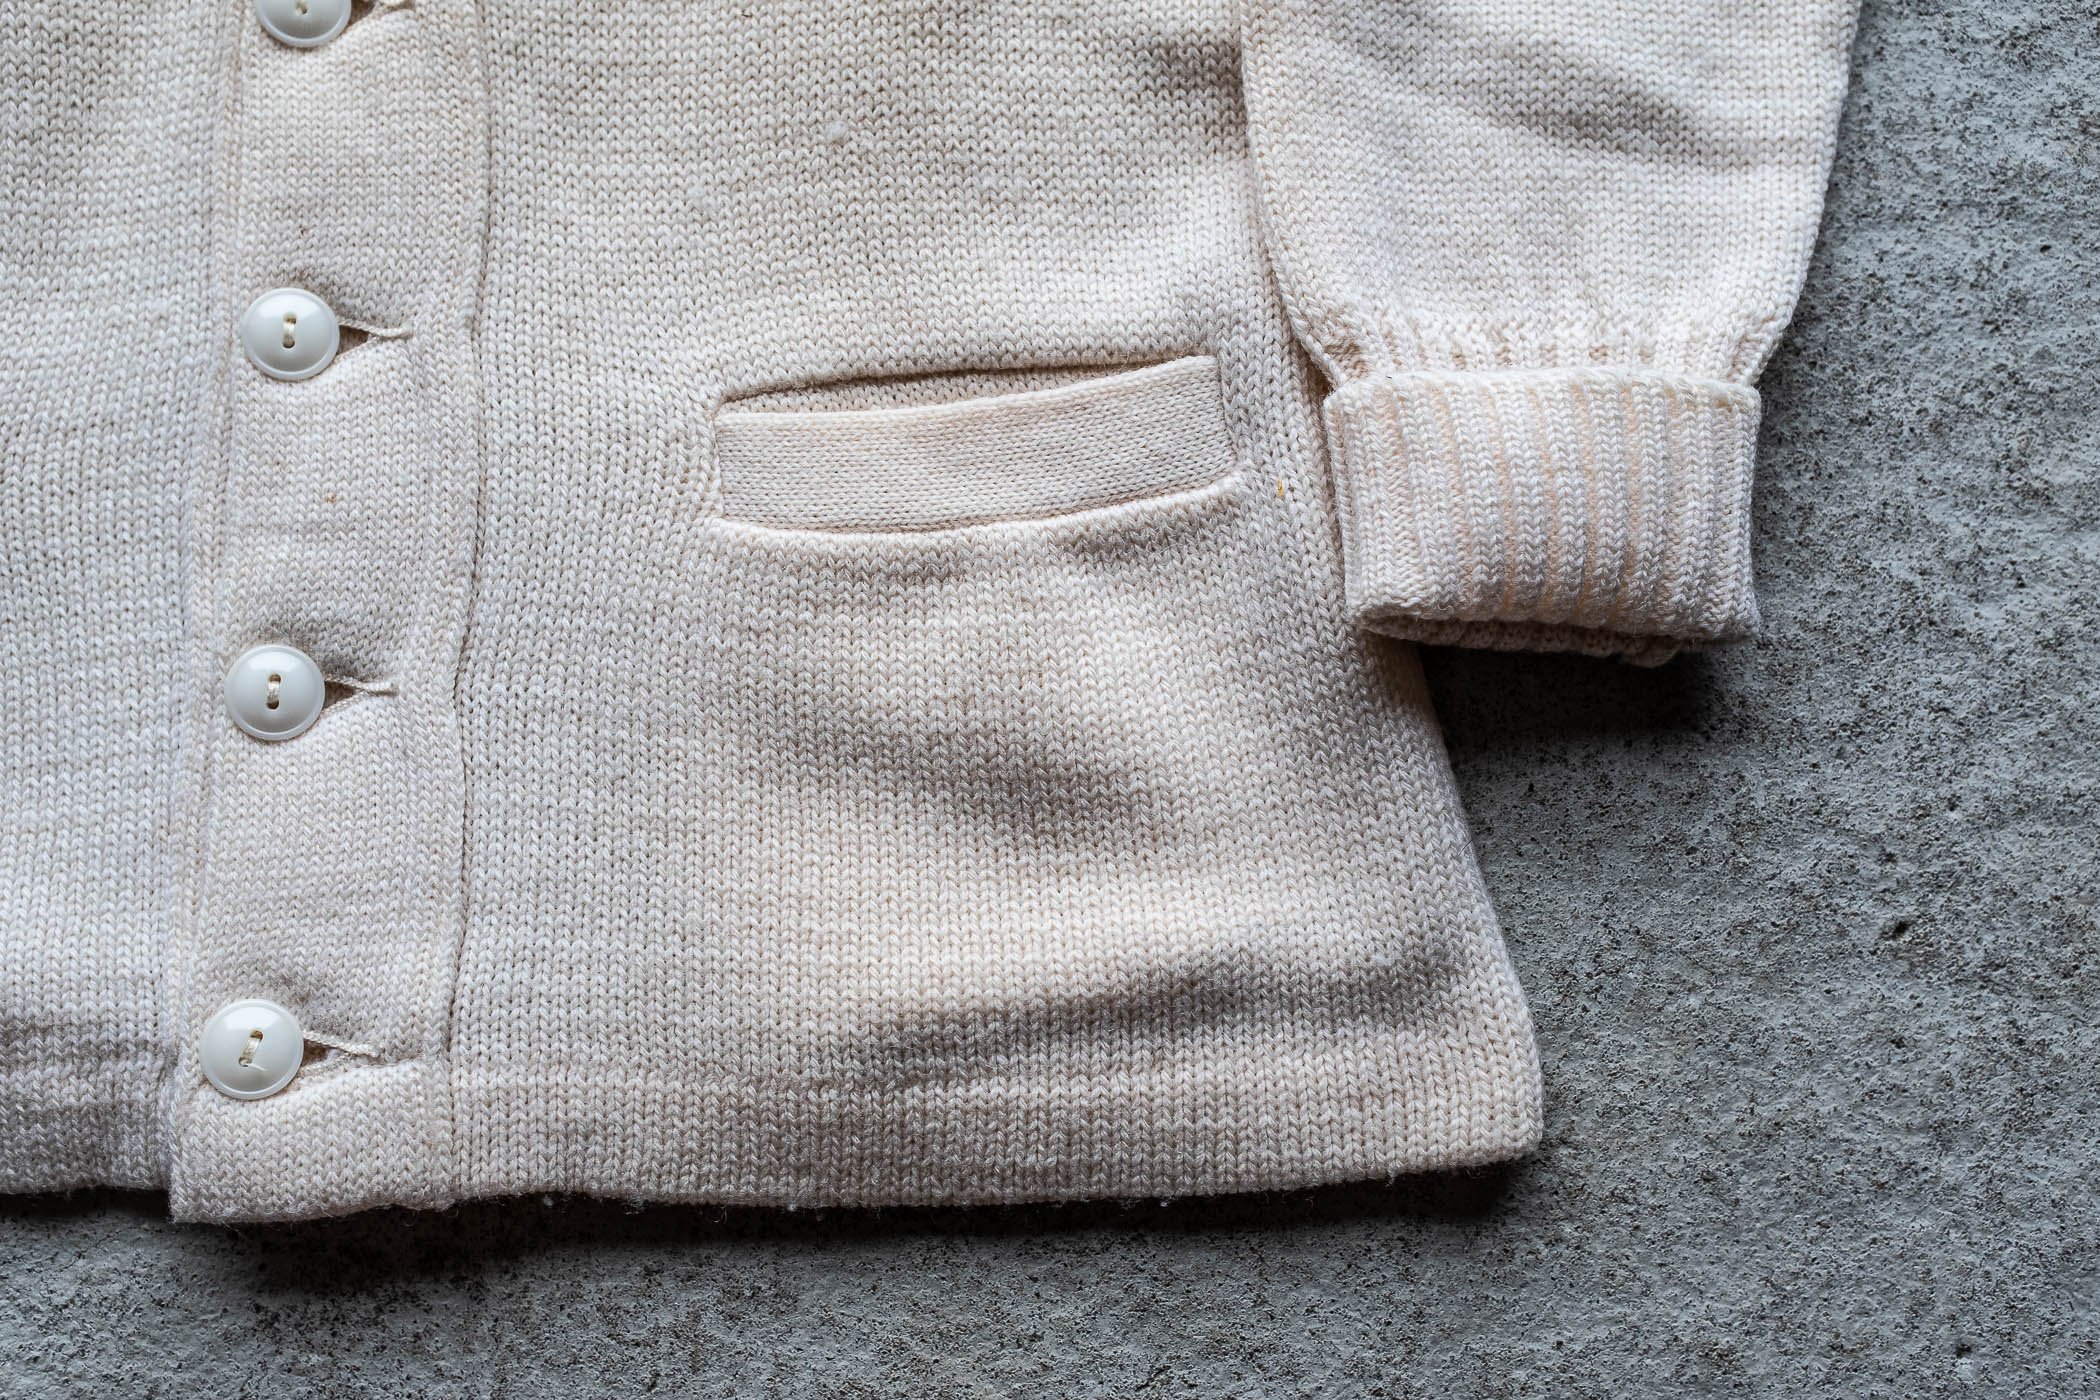 1942 White Wool Knit Cardigan Sweater. — SAUNDERSMILITARIA